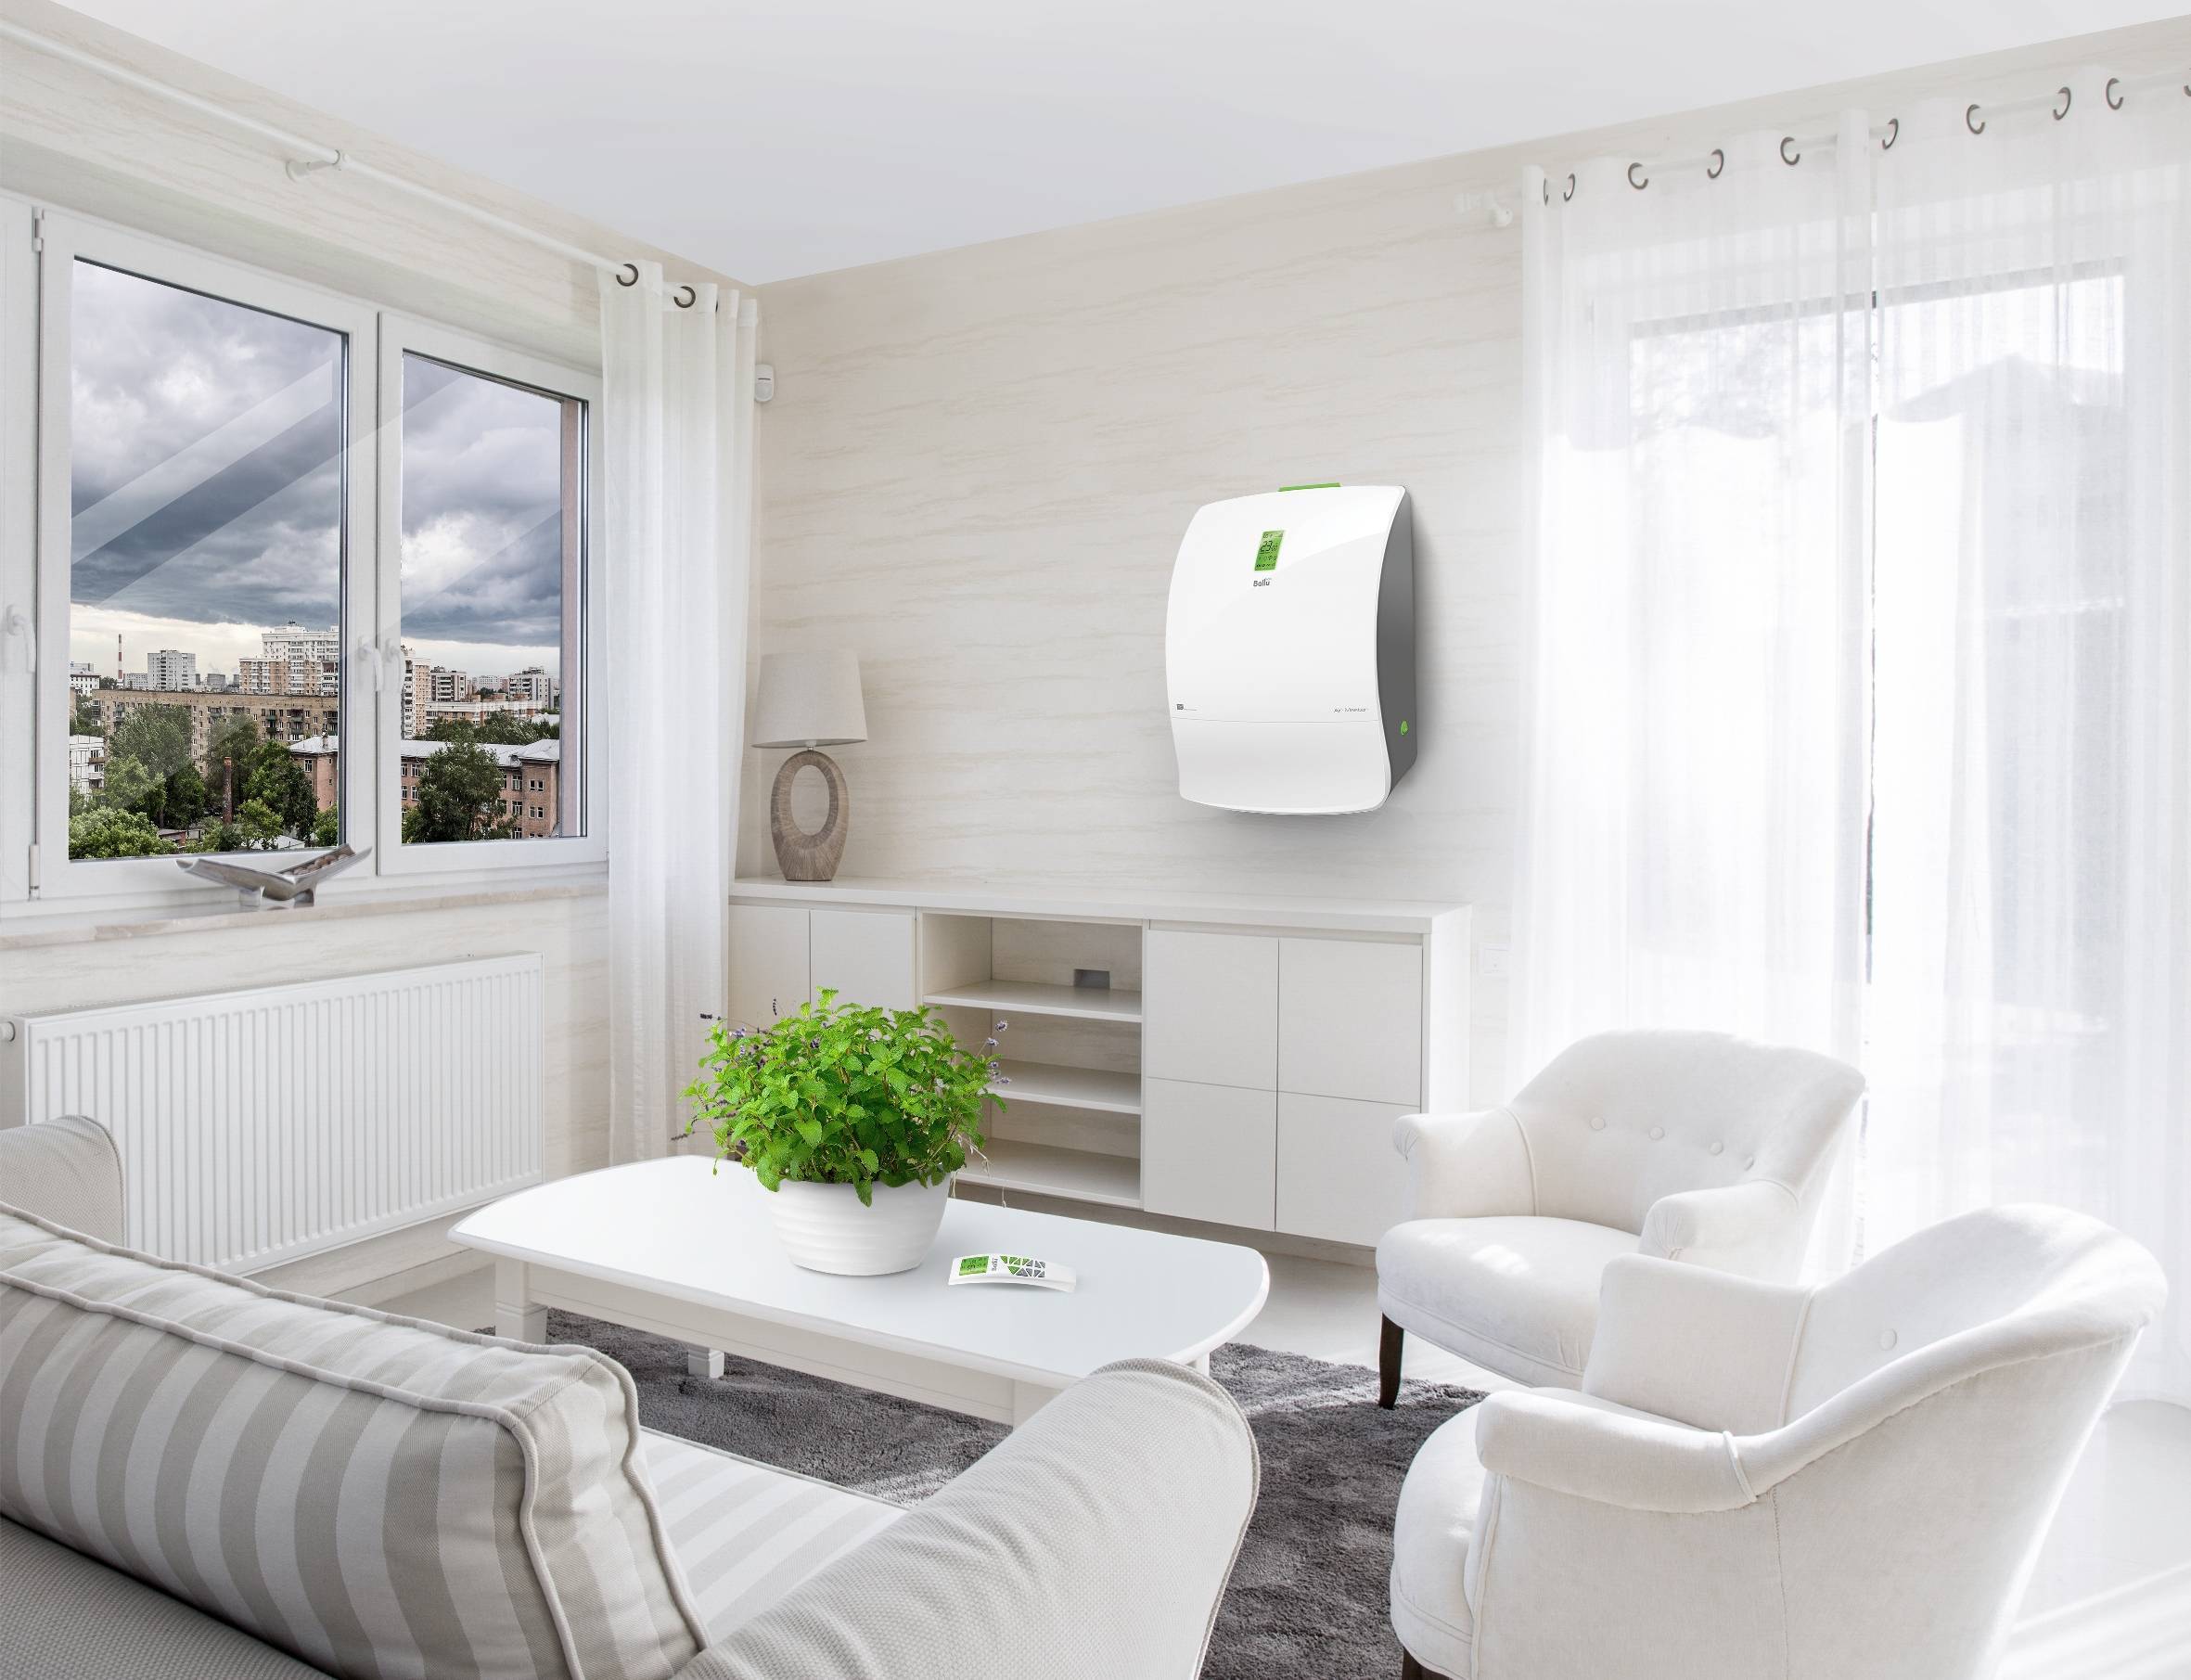 Сплит-система кондиционирования для квартиры и дома: советы по правильному подбору